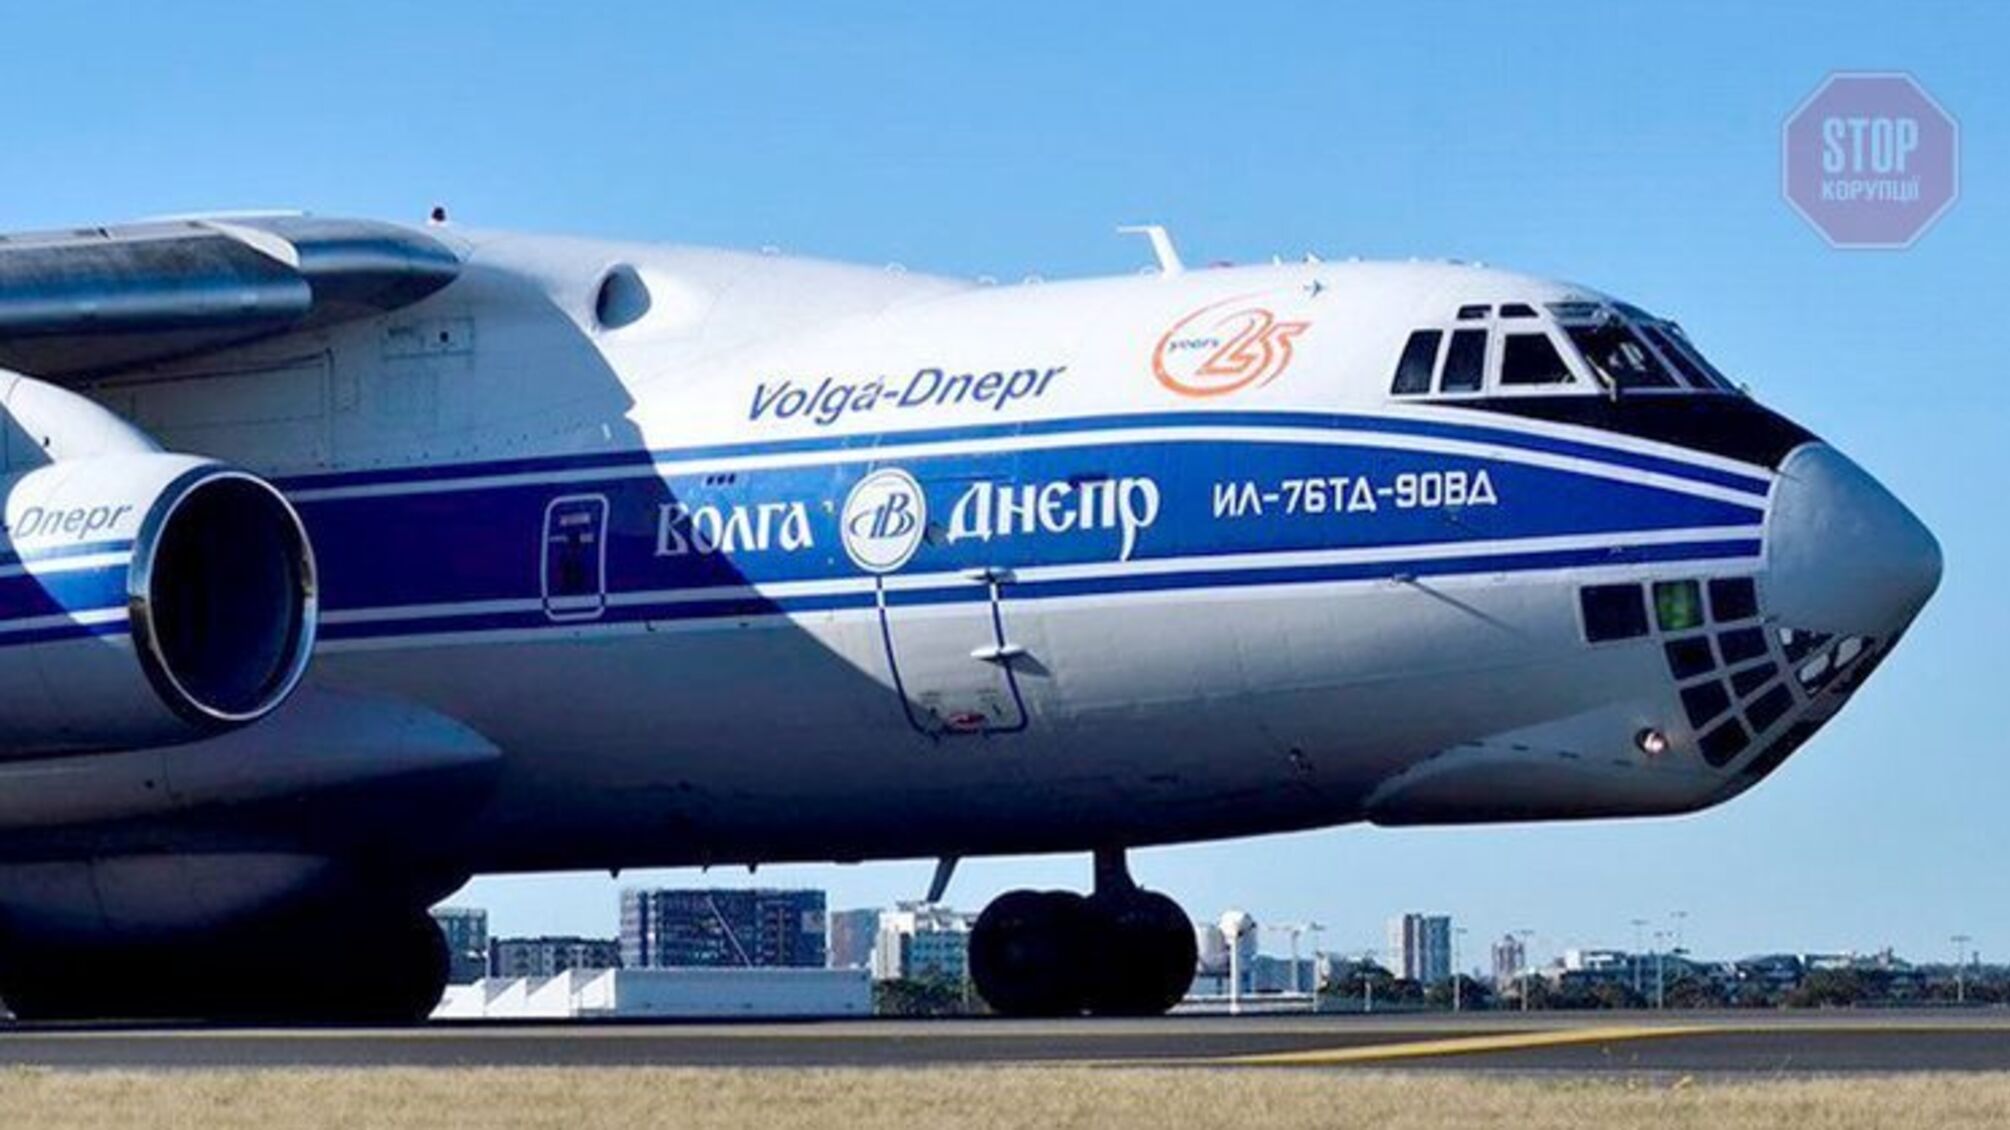 Вантажний літак з росії попри санкції літав до Євросоюзу